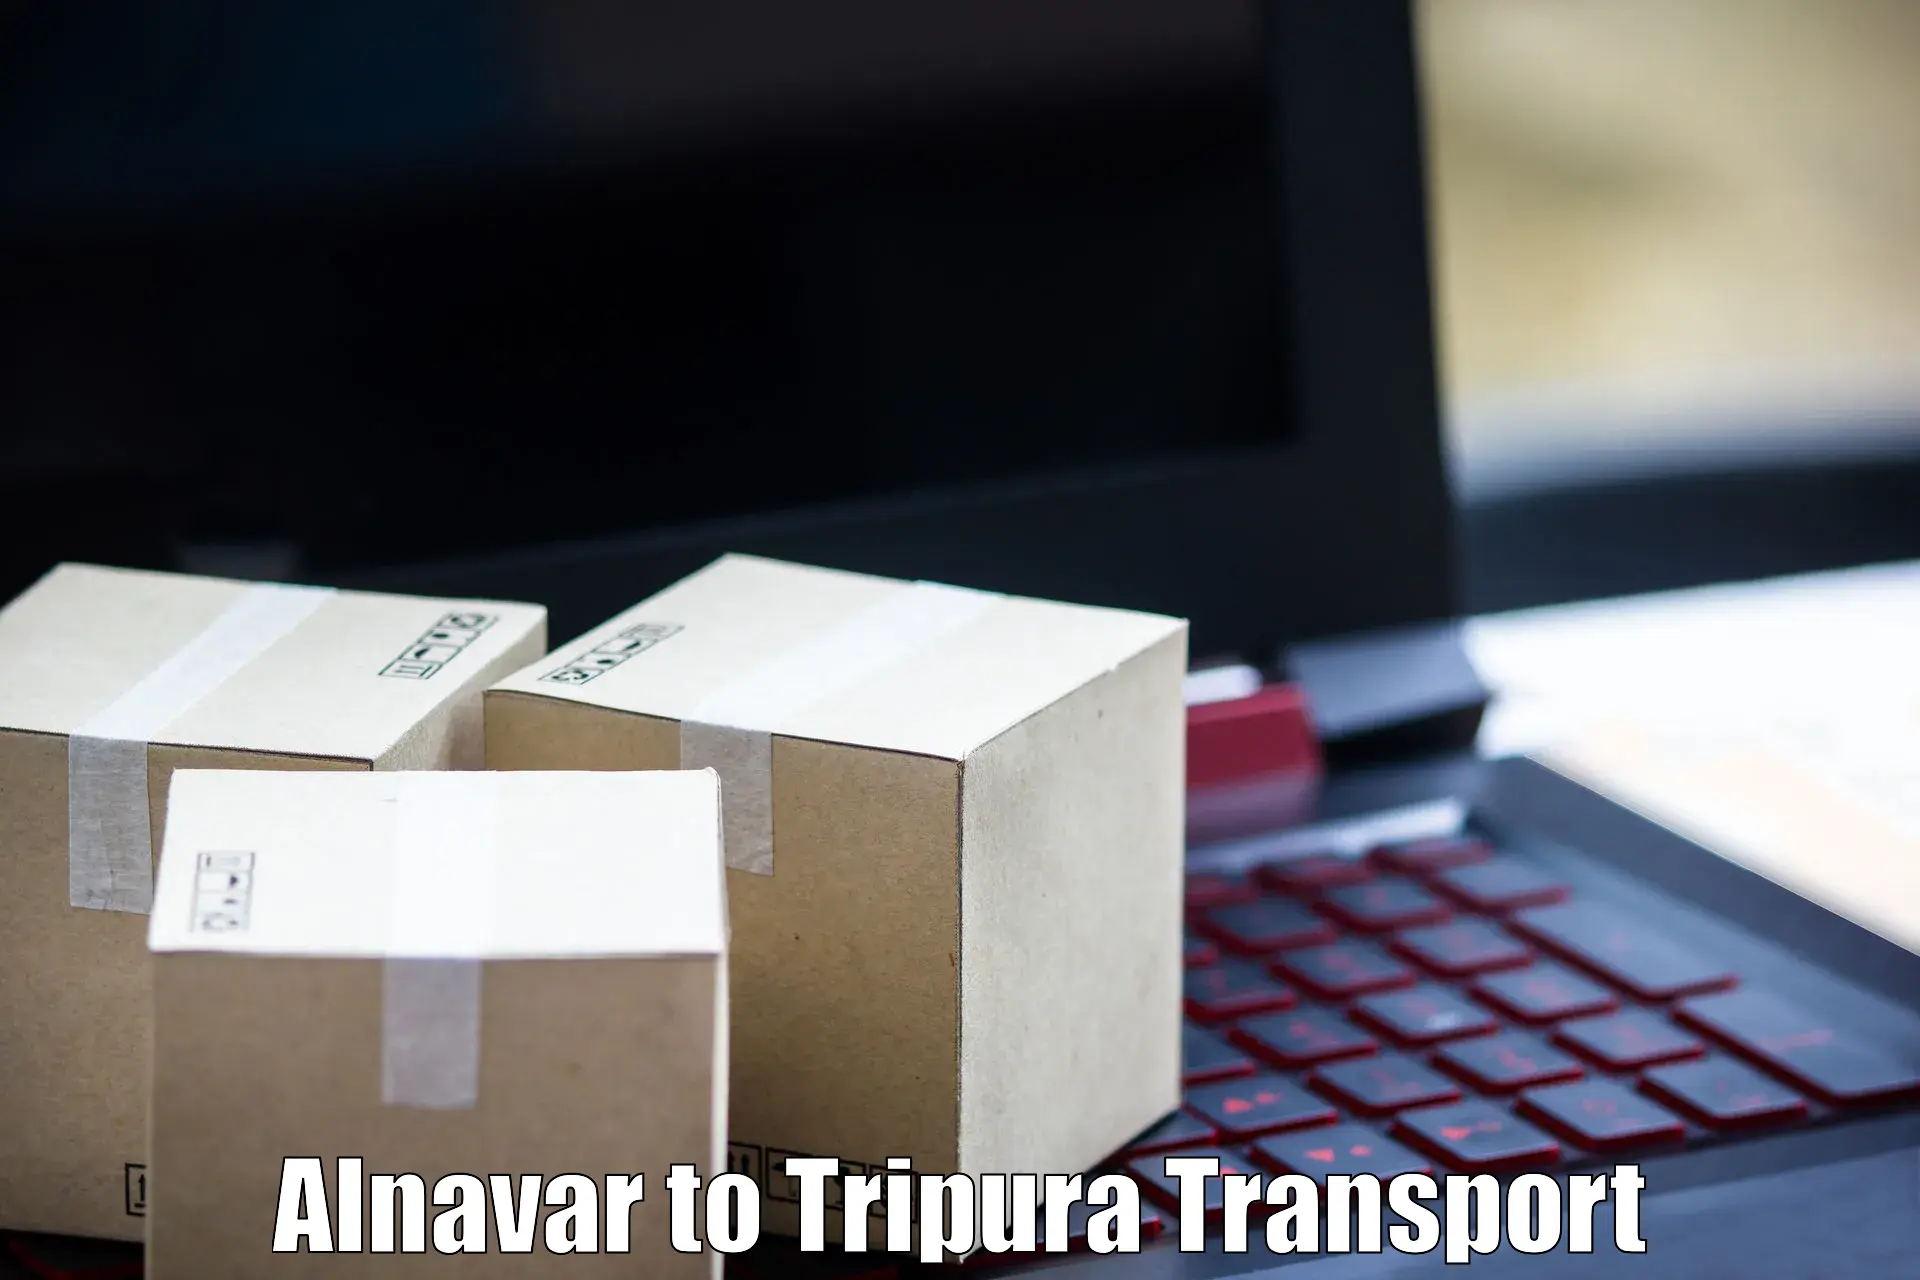 Online transport service Alnavar to Amarpur